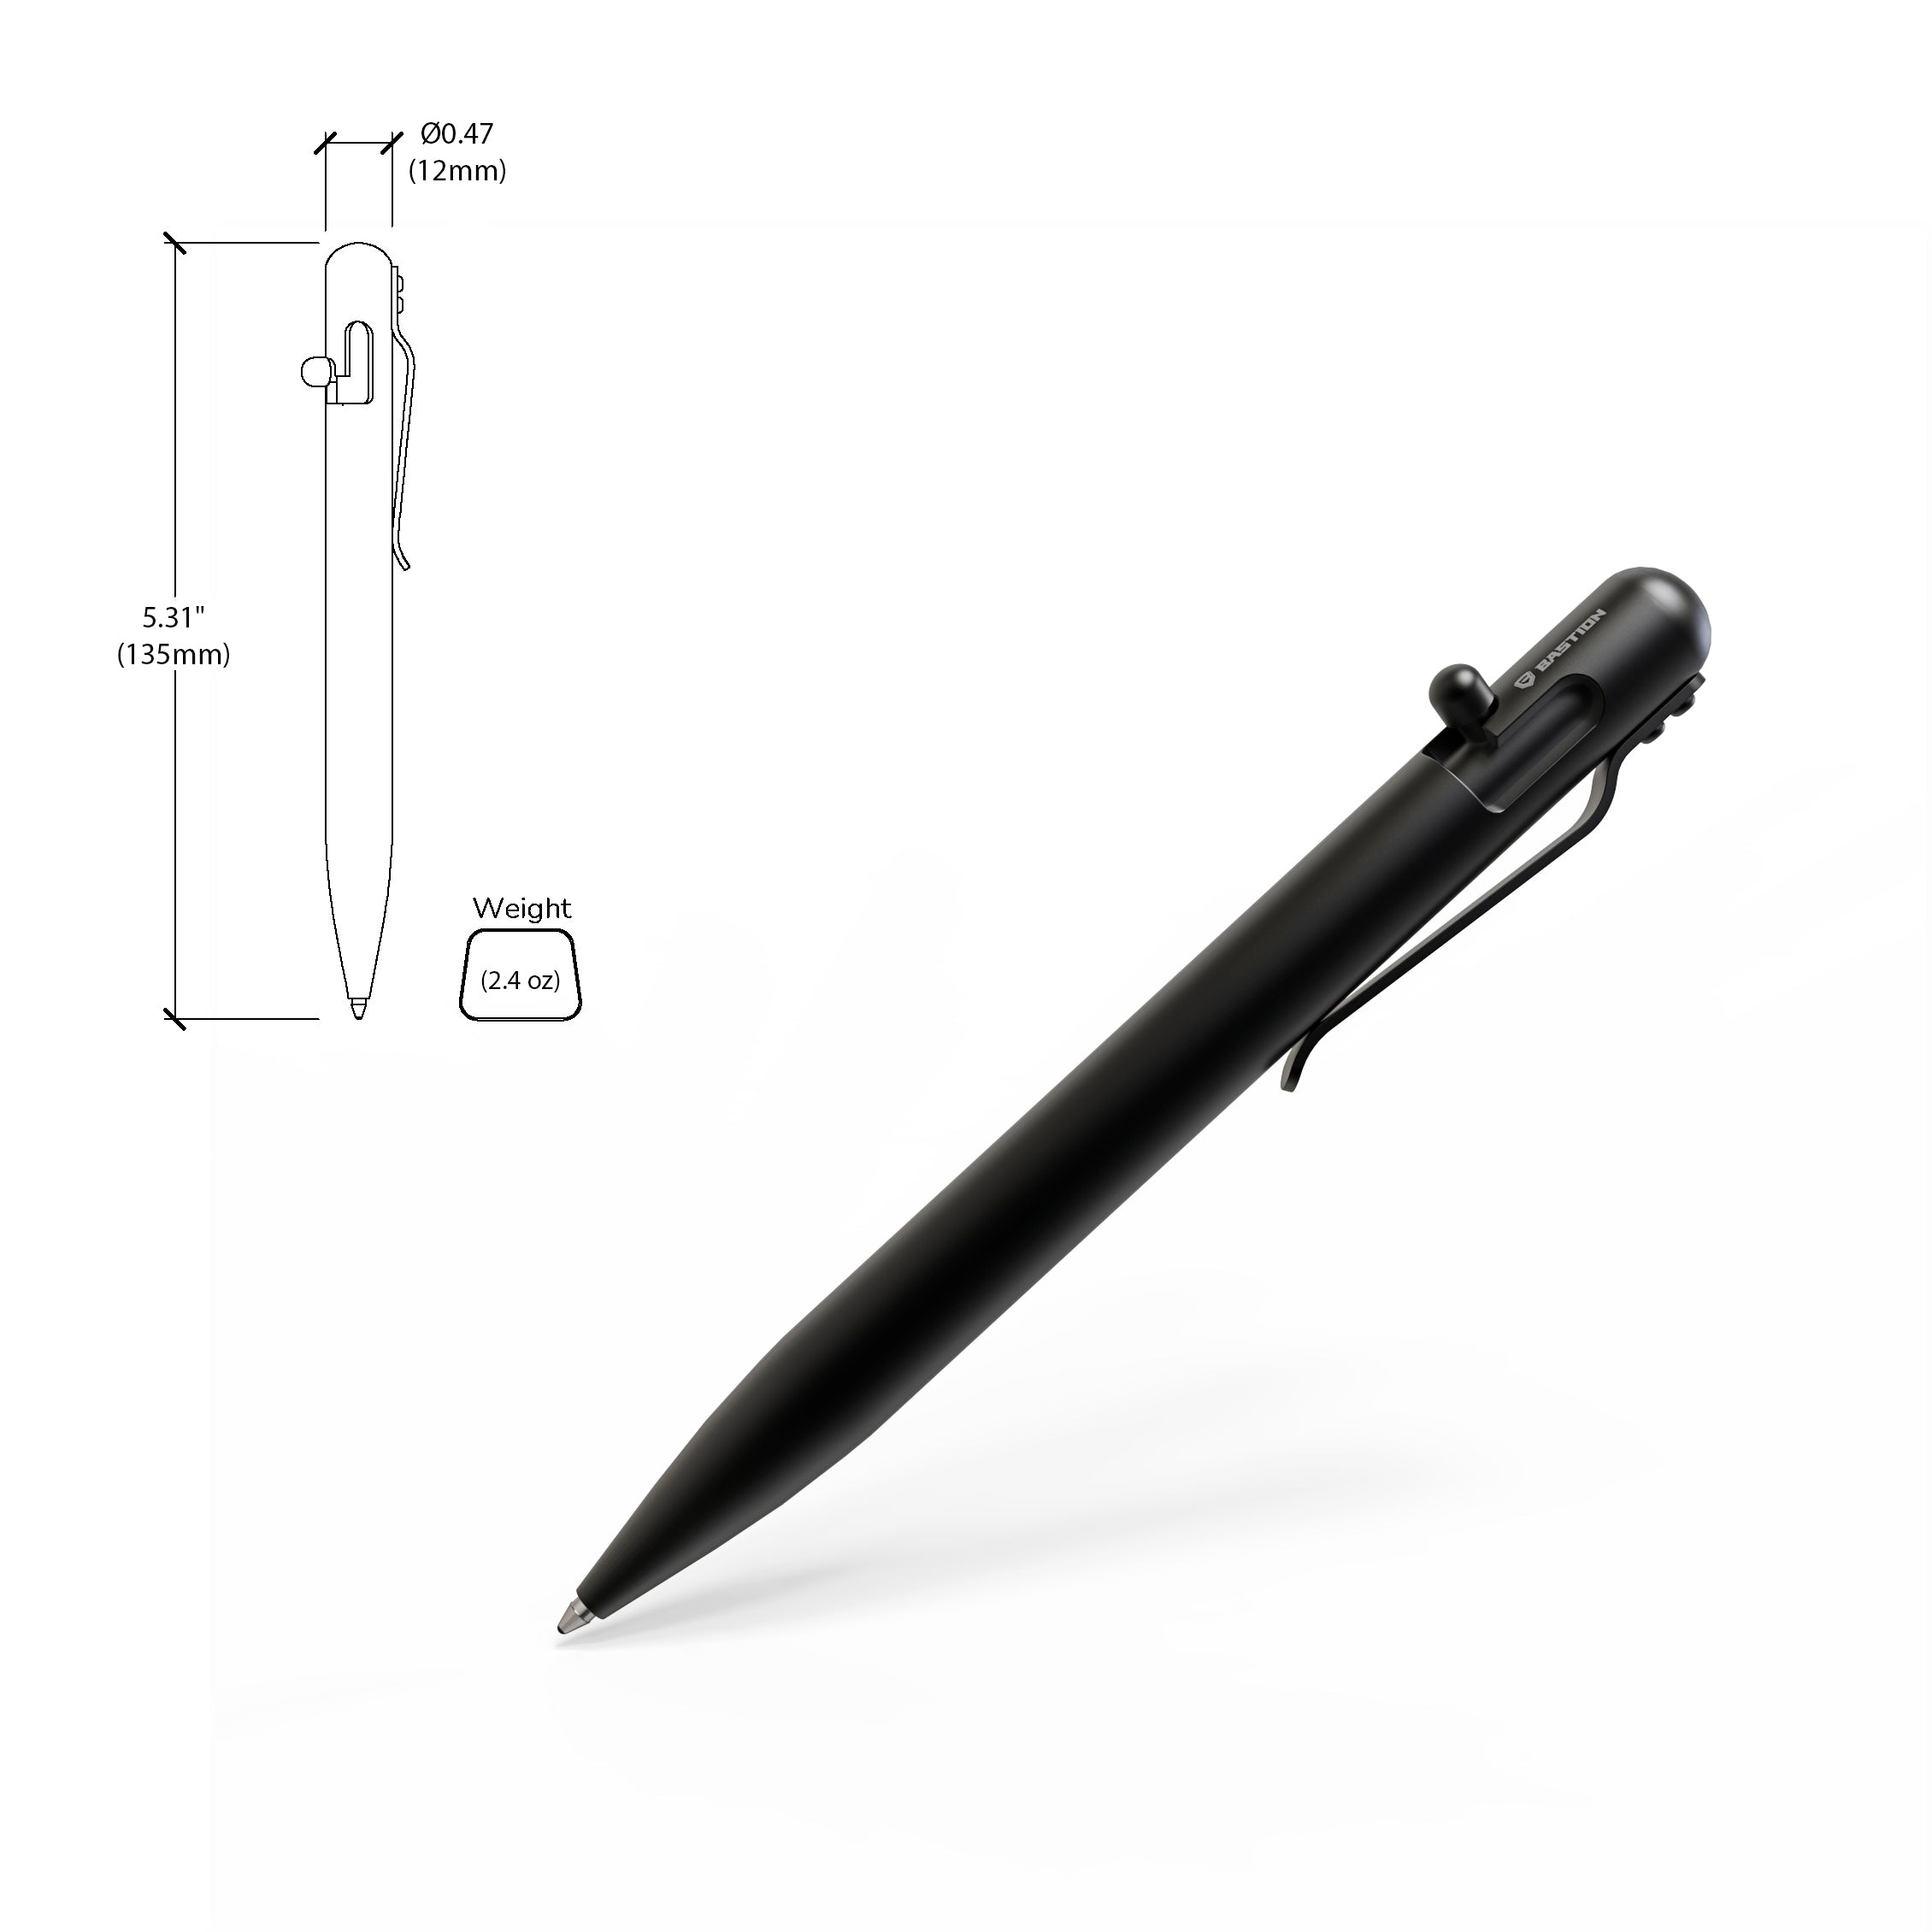 Zirconium - Bolt Action Pen by Bastion® - Bastion Bolt Action Pen